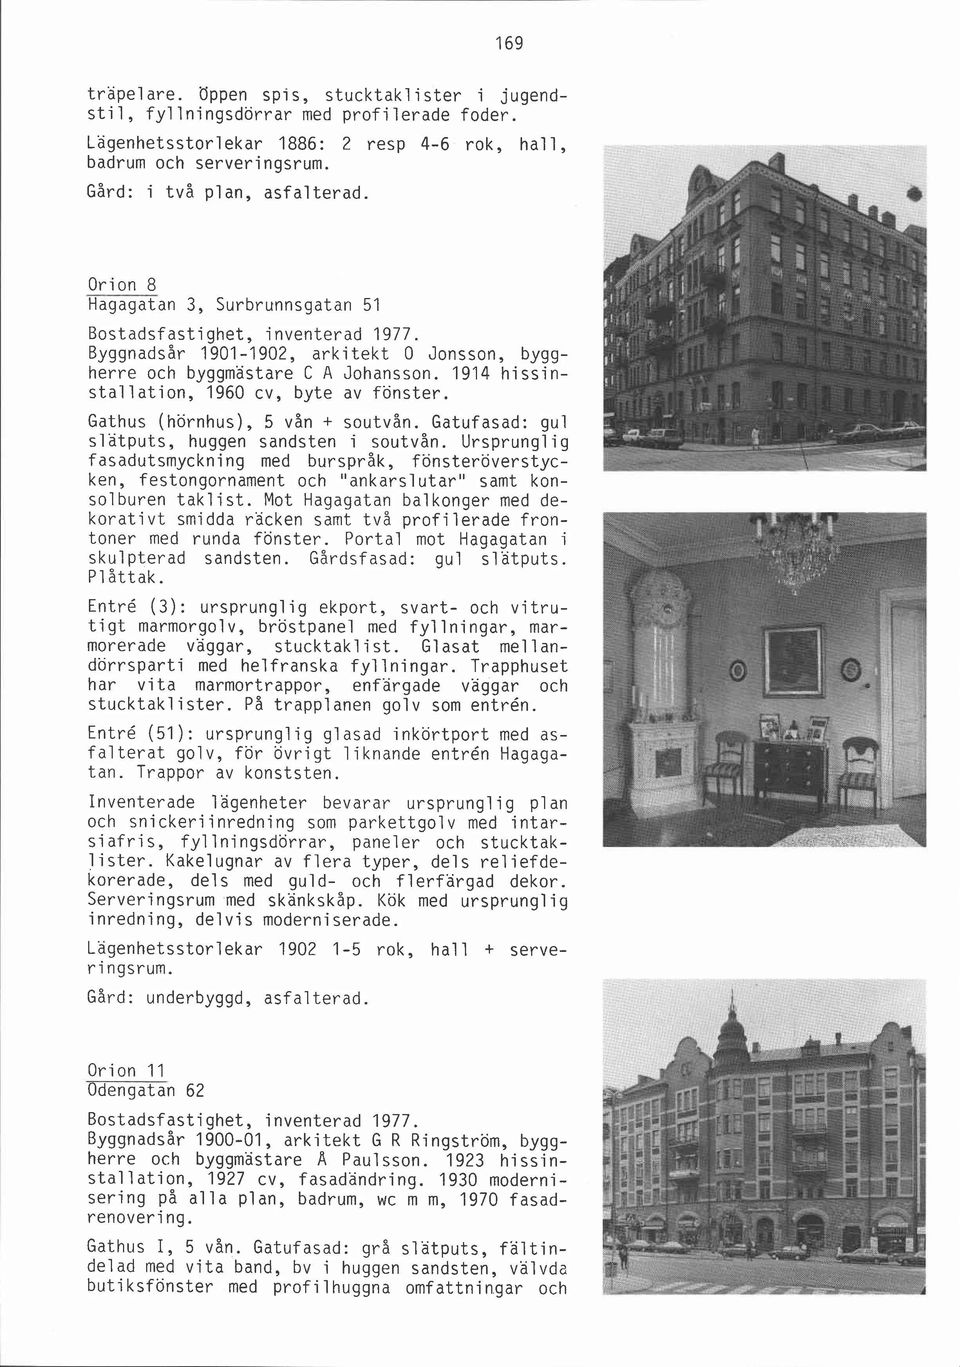 1914 hissinstallation, 1960 cv, byte av fönster. Gathus (hörnhus), 5 vån + soutvån. Gatufasad: gul slatputs, huggen sandsten i soutvån.